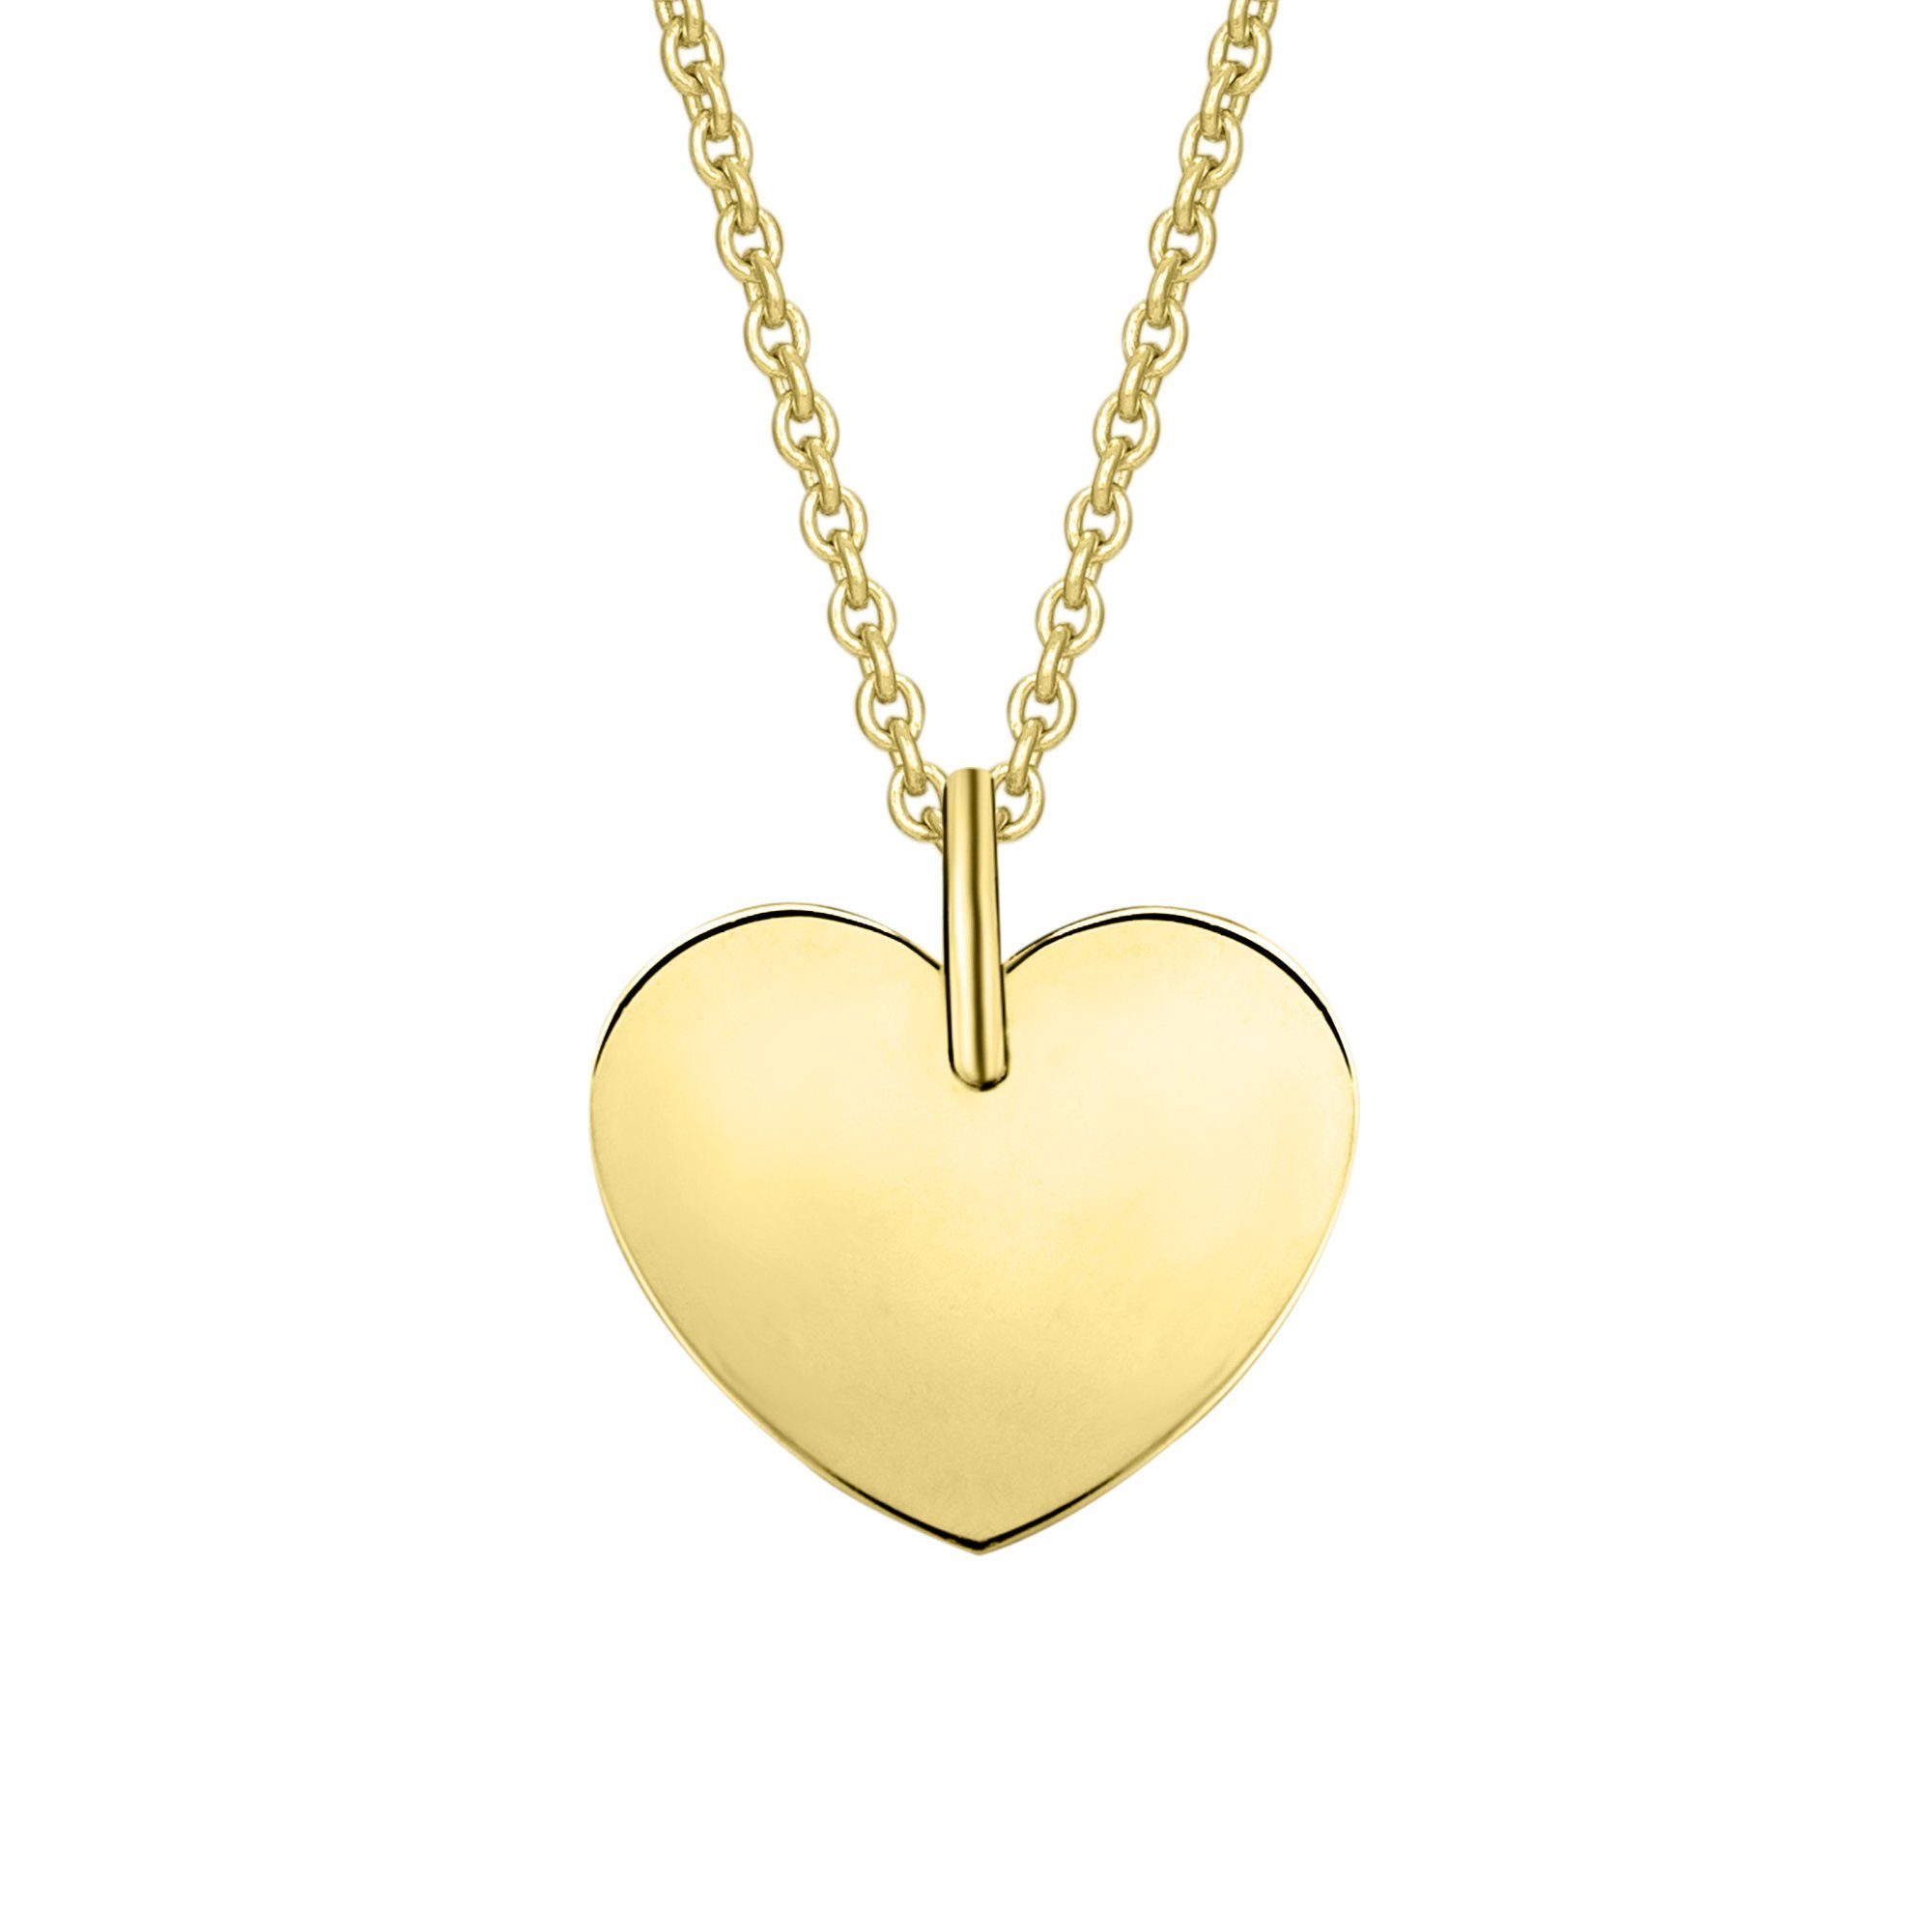 ONE ELEMENT Kettenanhänger Herz ohne Gravur Herz Anhänger aus 333 Gelbgold,  Damen Gold Schmuck Herz ohne Gravur, Breite : 12,00 mm - Höhe : 12,50 mm  incl. Öse